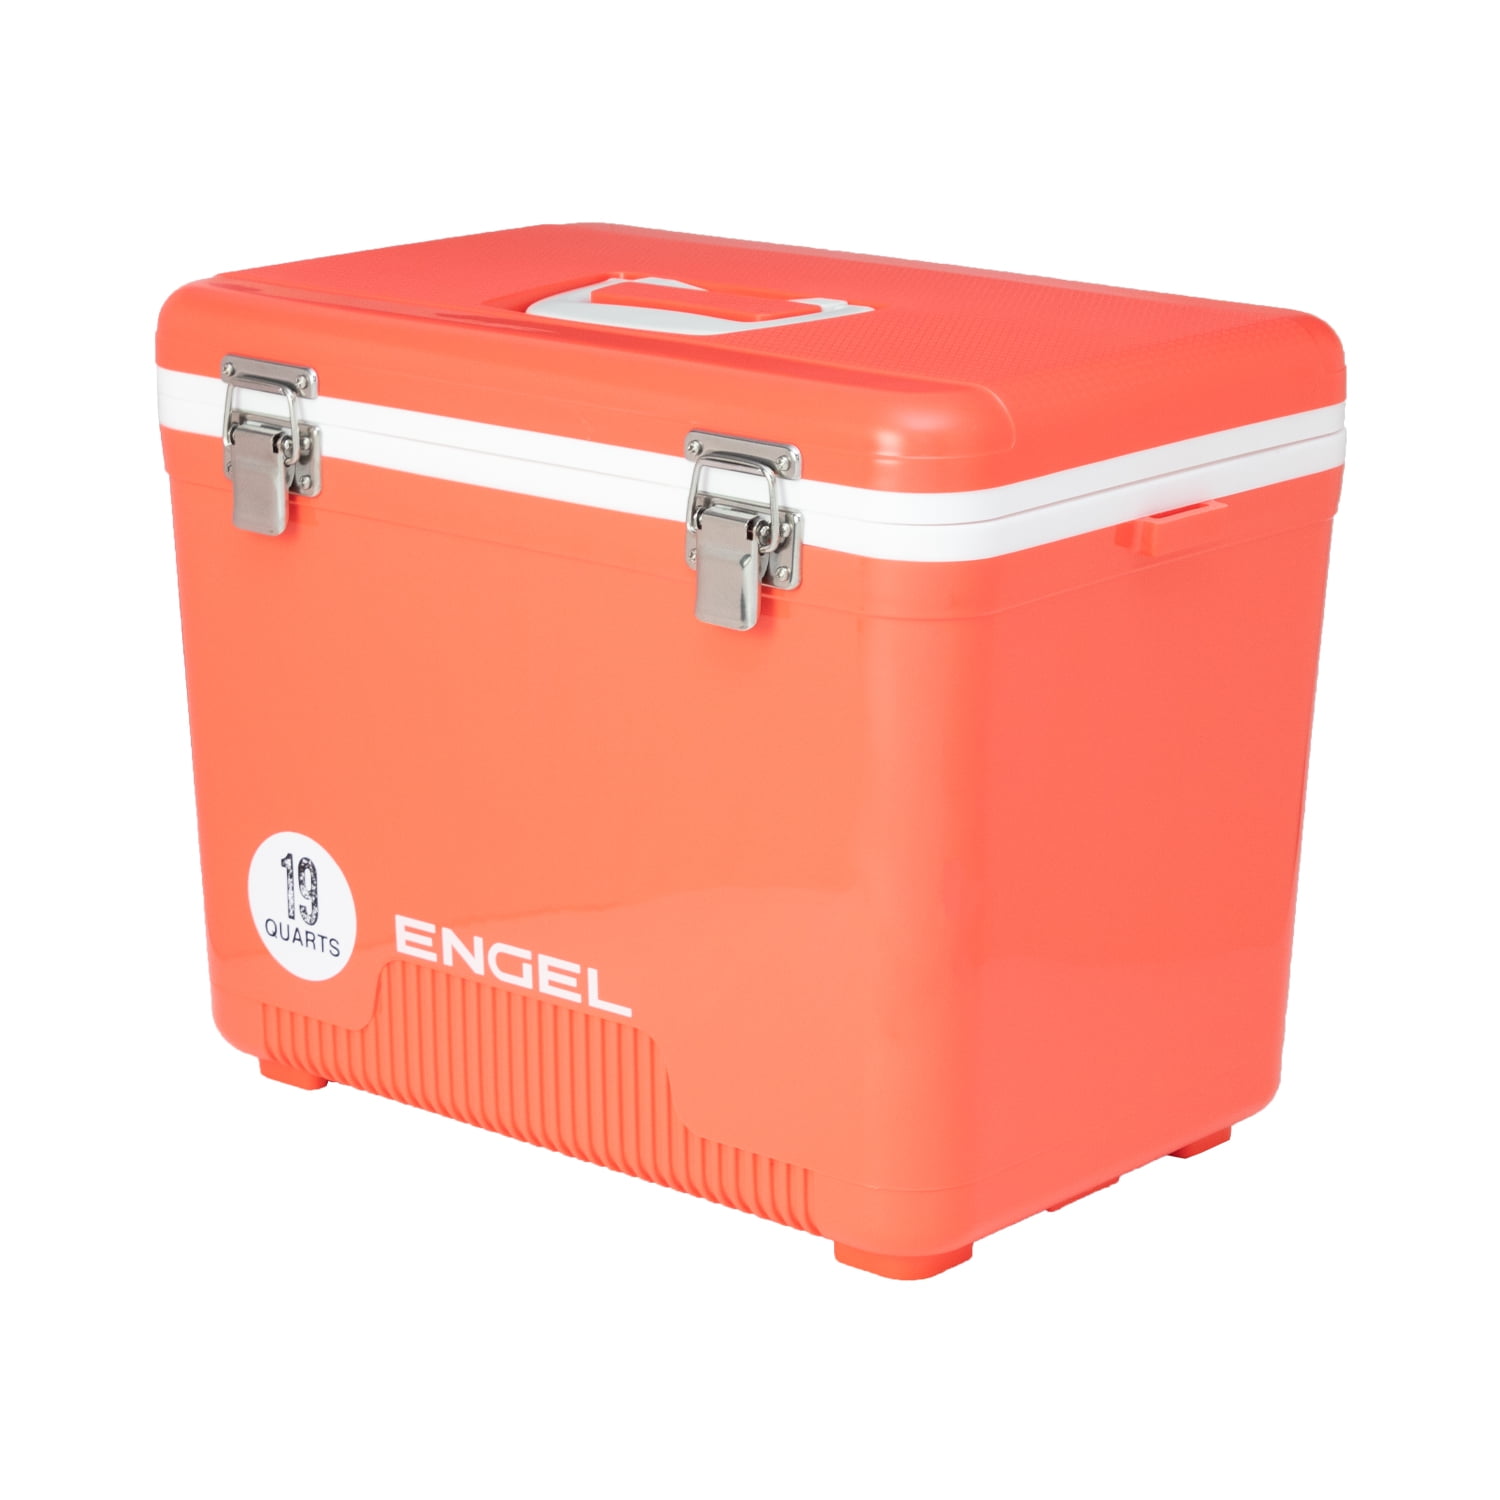 Engel 19 qt. Hard Sided Cooler, Coral Orange